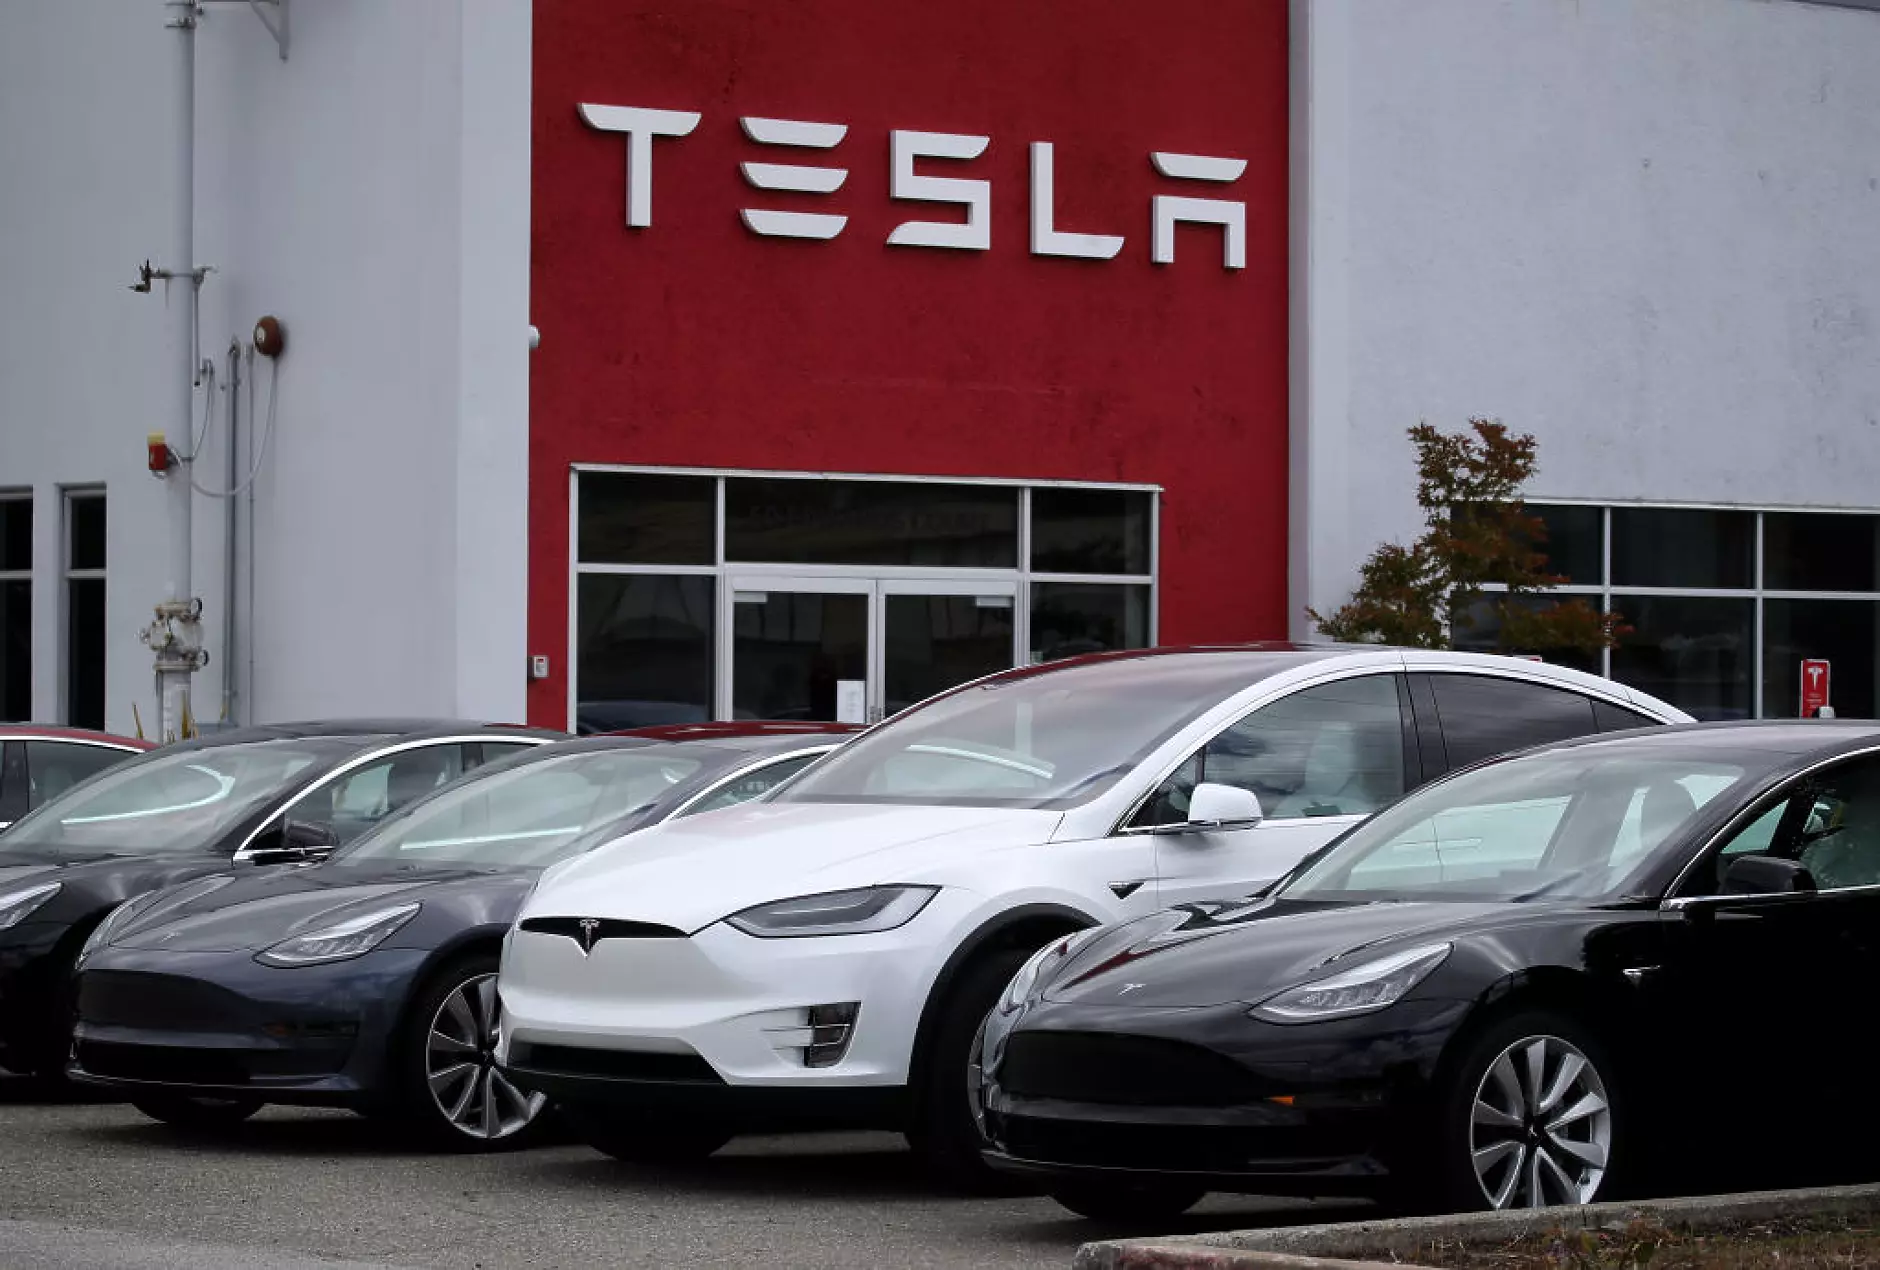 Амбициозната цел на Мъск да продаде 20 млн. електрически коли би струвала стотици милиарди на Tesla